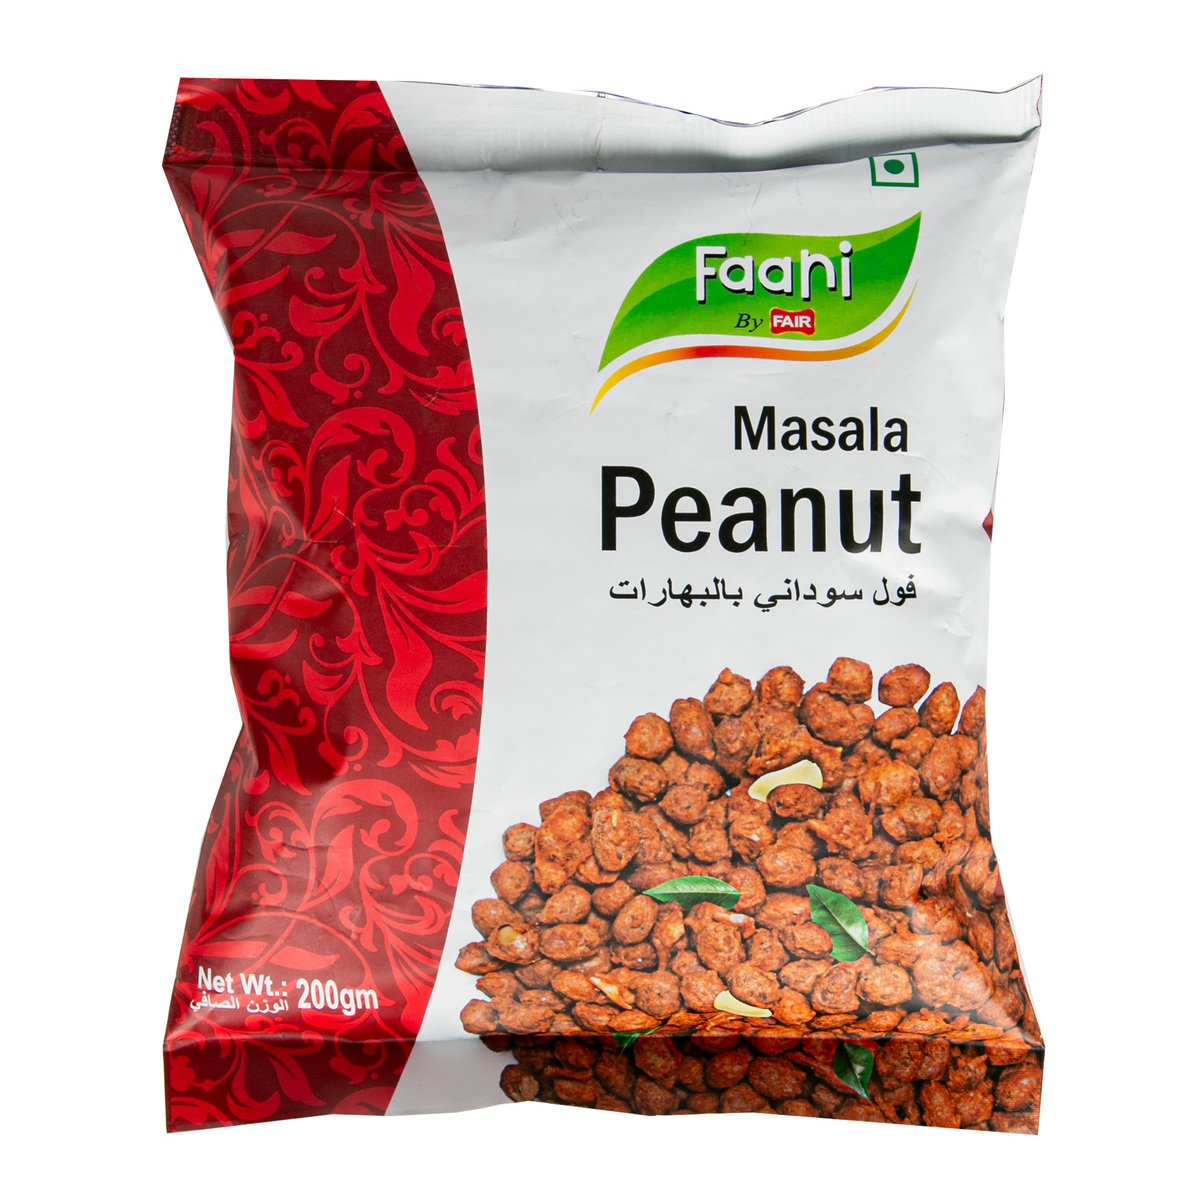 Faani Peanut Masala 200 g